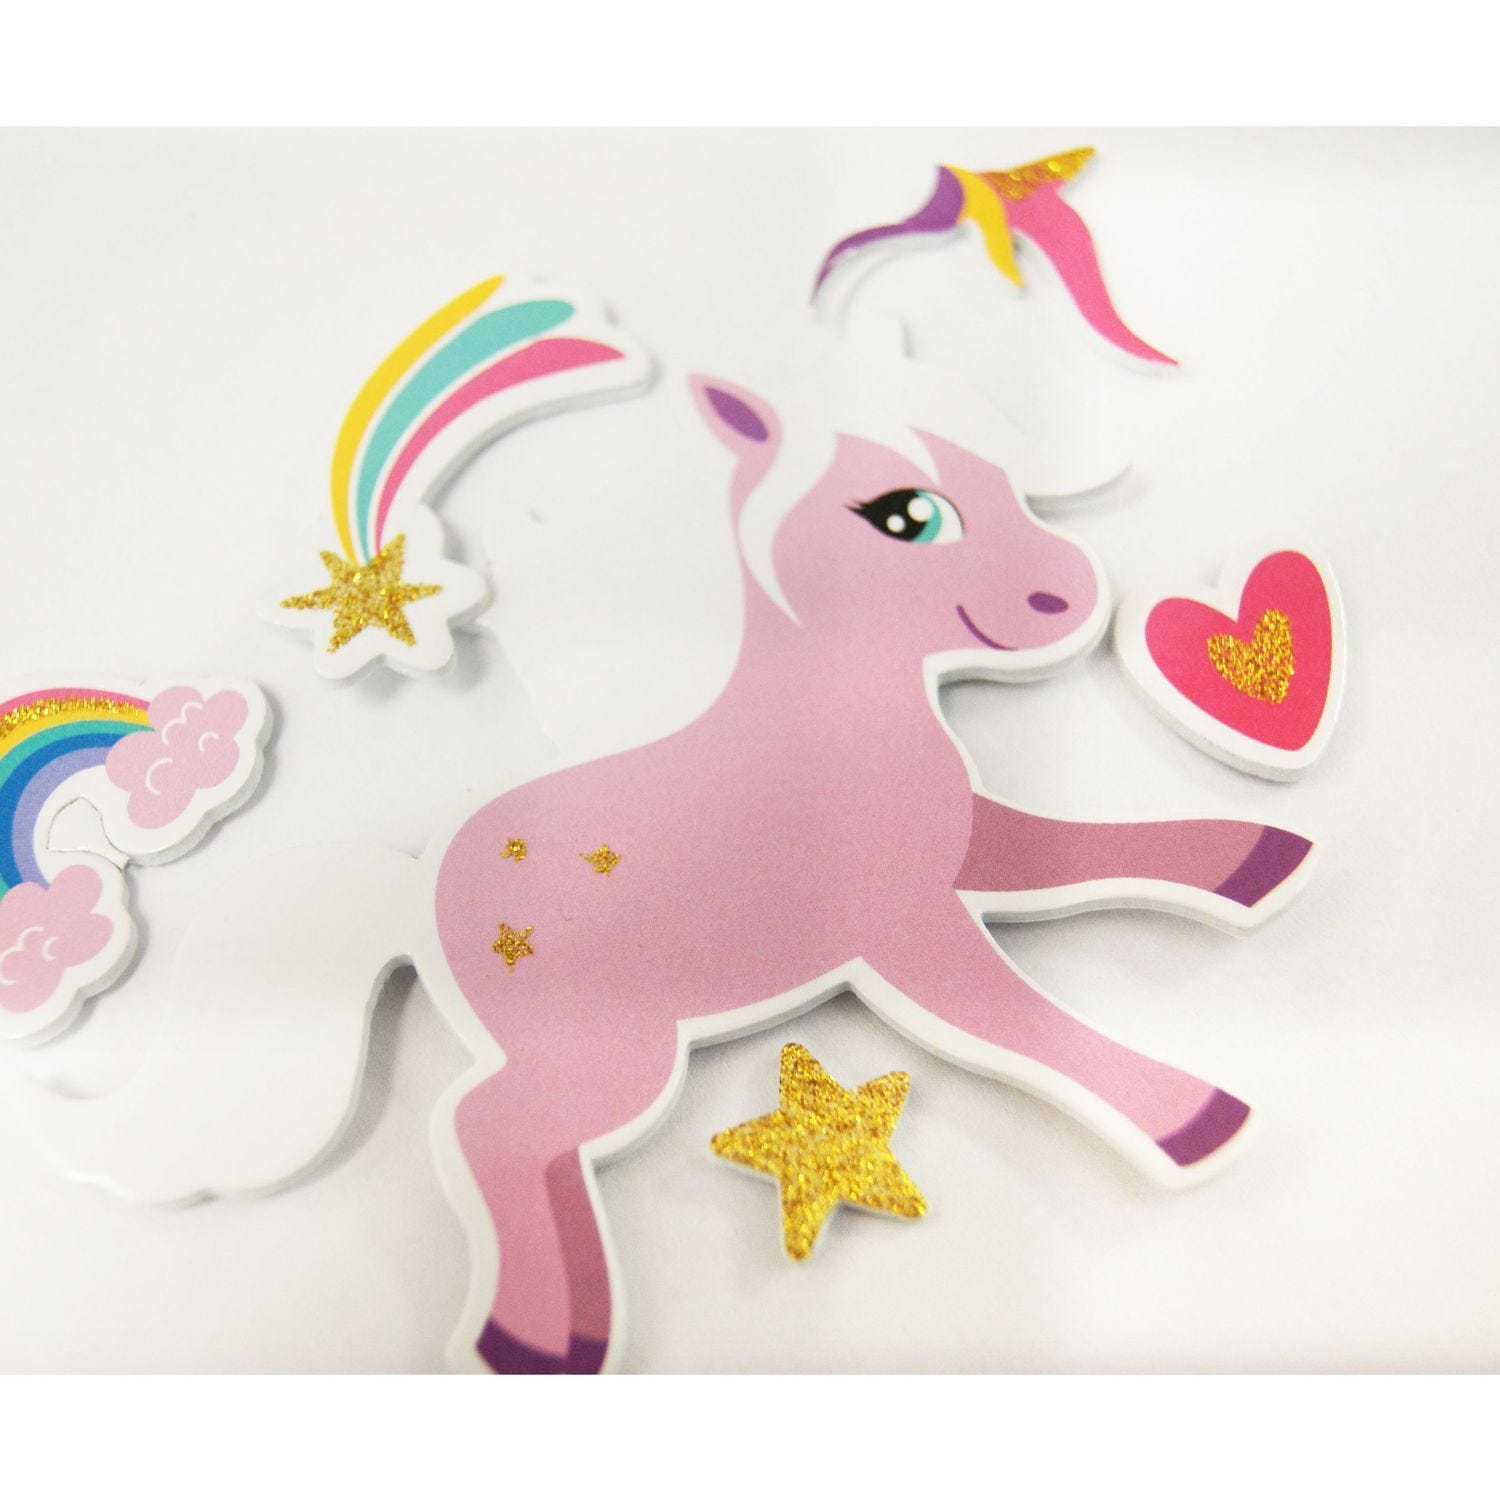 30 adesivi - schiuma EVA - Unicorni da personalizzare